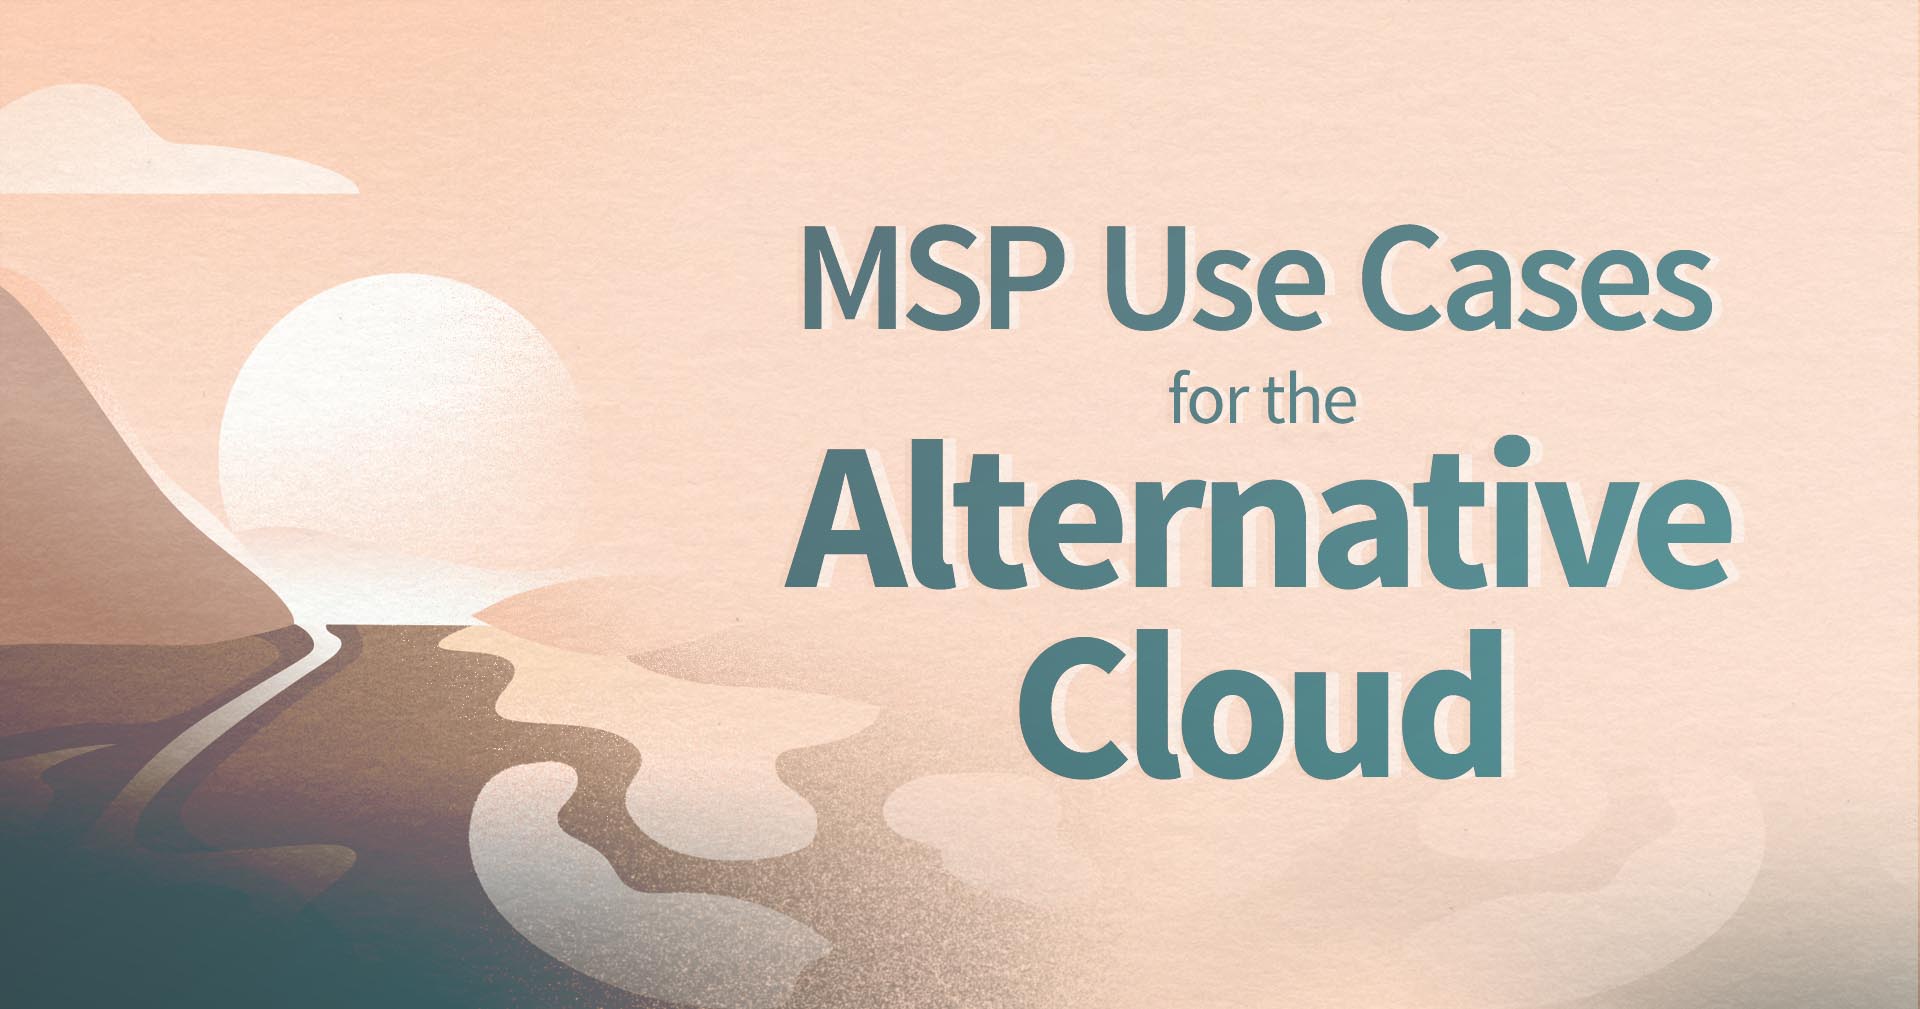 Casos de uso de la nube alternativa por parte de los MSP